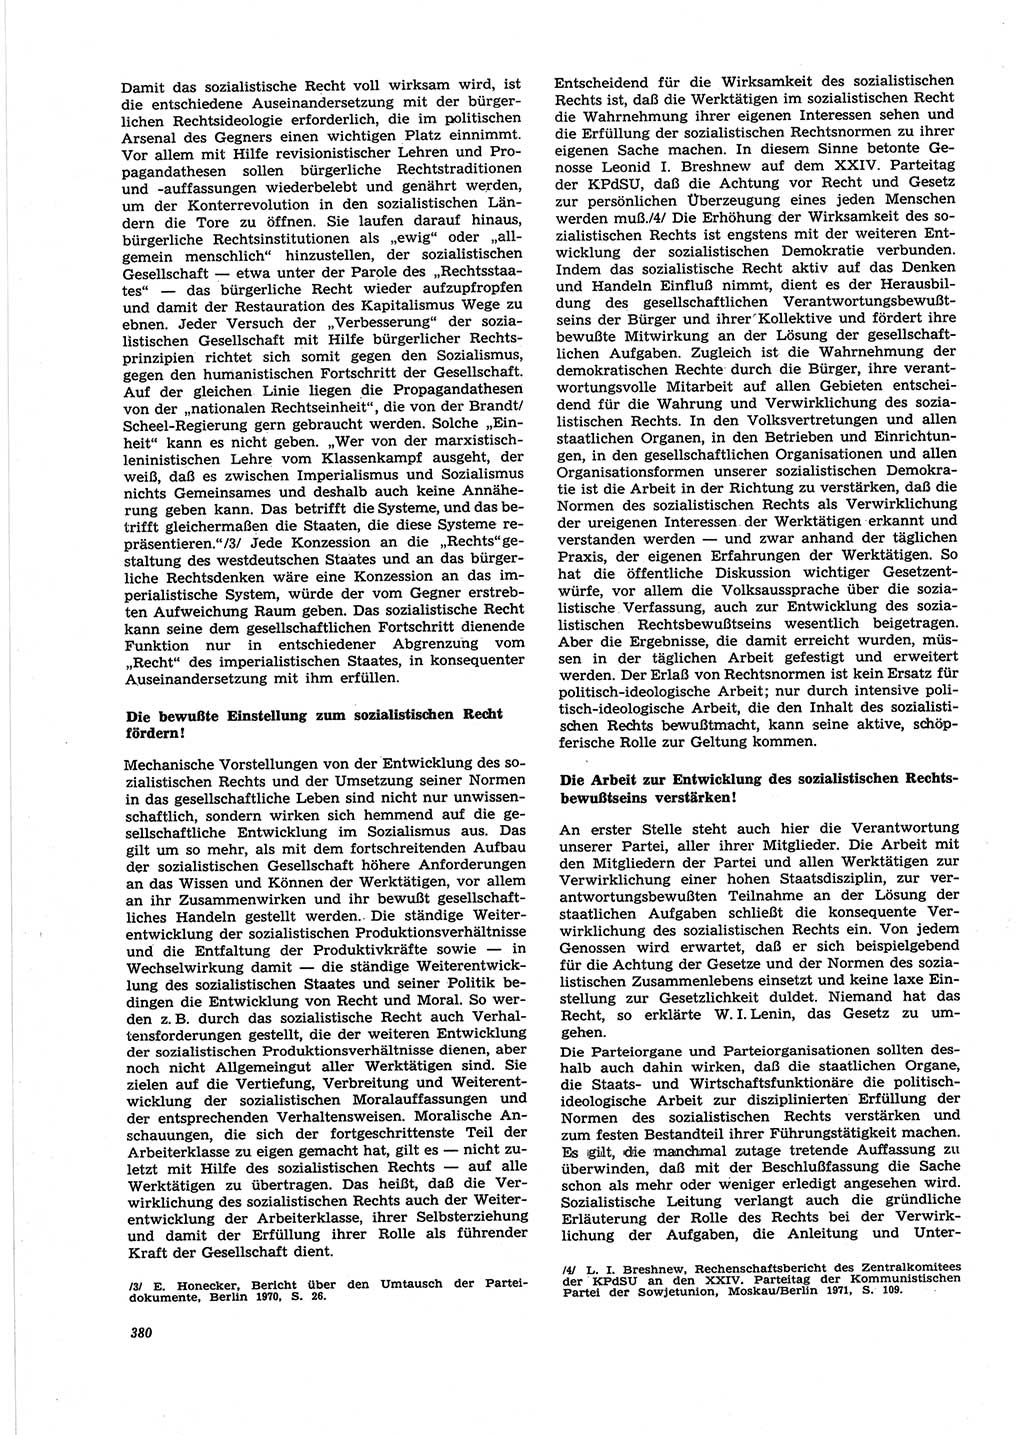 Neue Justiz (NJ), Zeitschrift für Recht und Rechtswissenschaft [Deutsche Demokratische Republik (DDR)], 25. Jahrgang 1971, Seite 380 (NJ DDR 1971, S. 380)